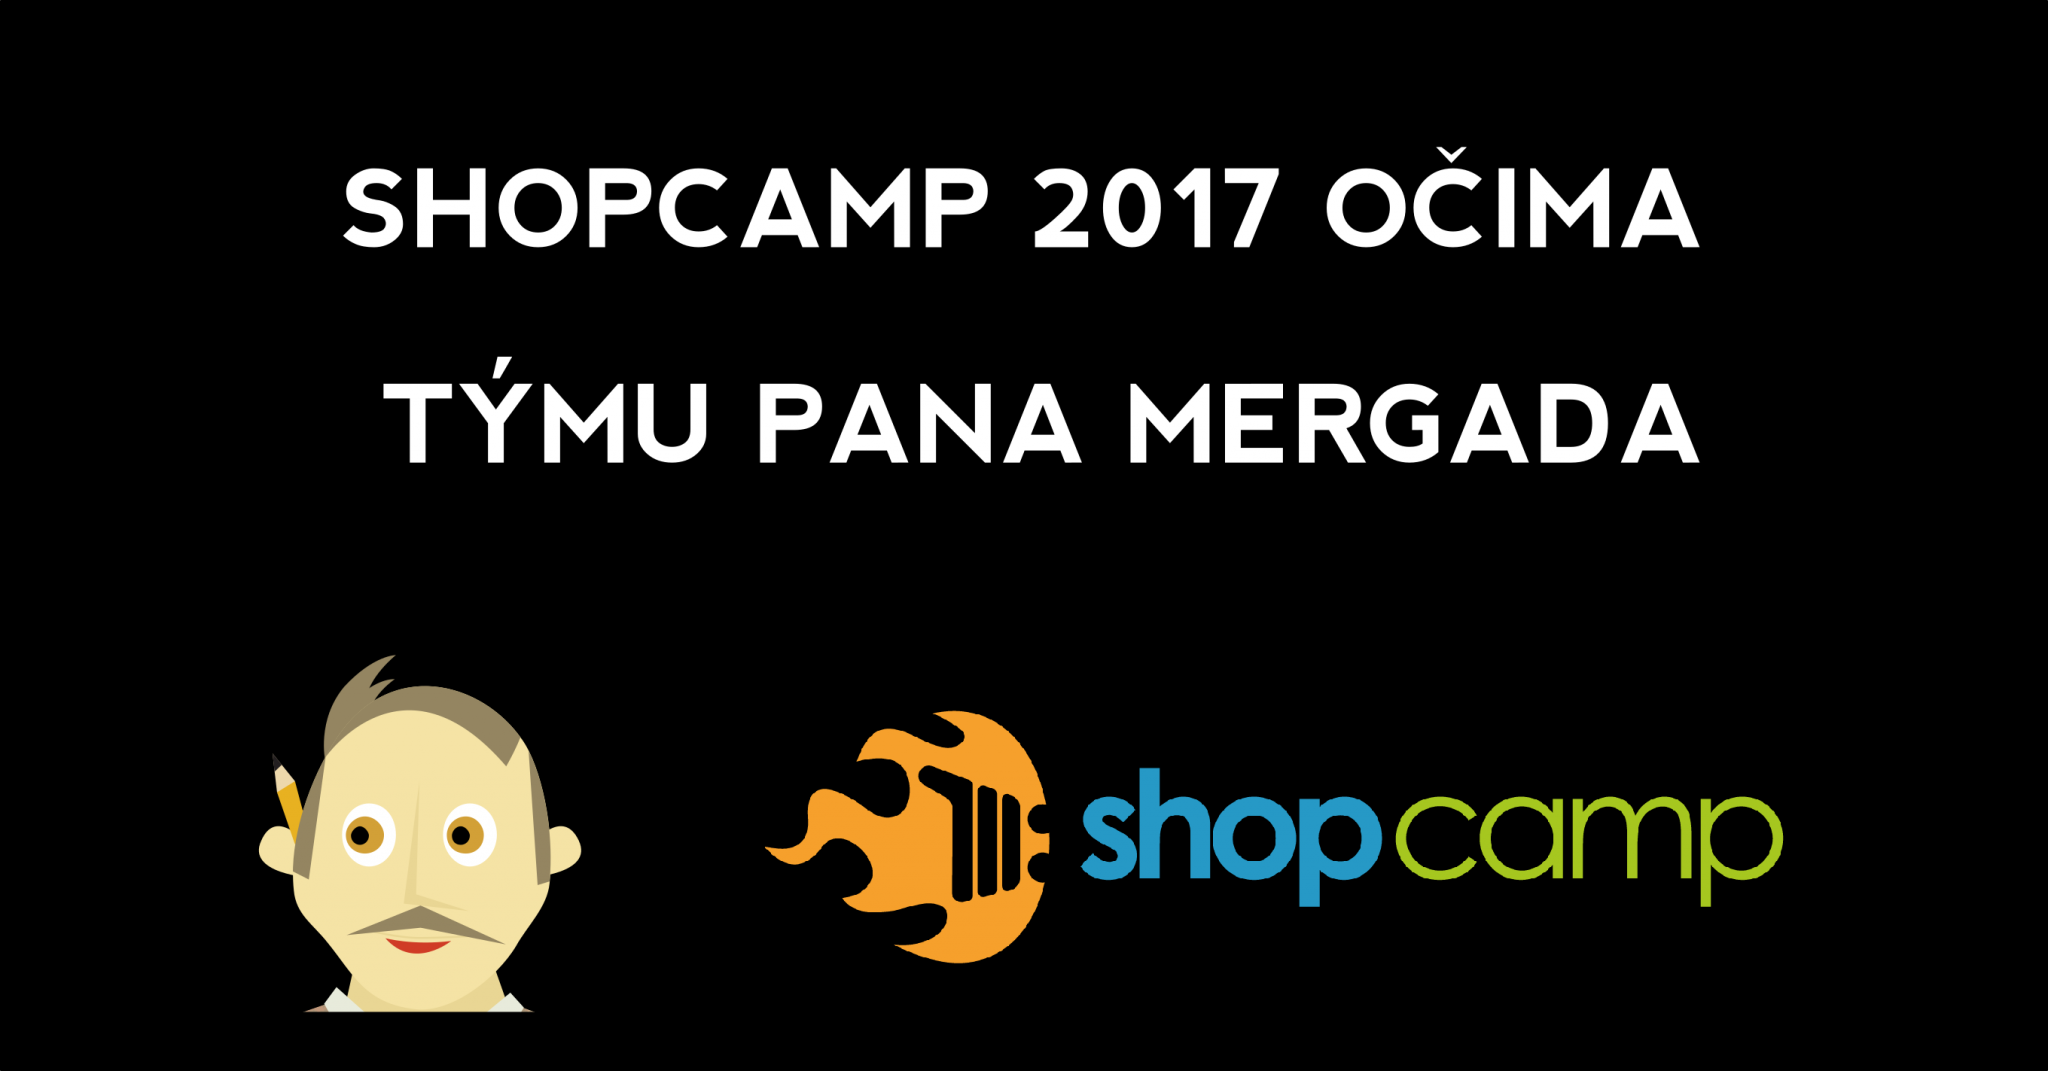 Shopcamp 2017 očima Mergada - banner